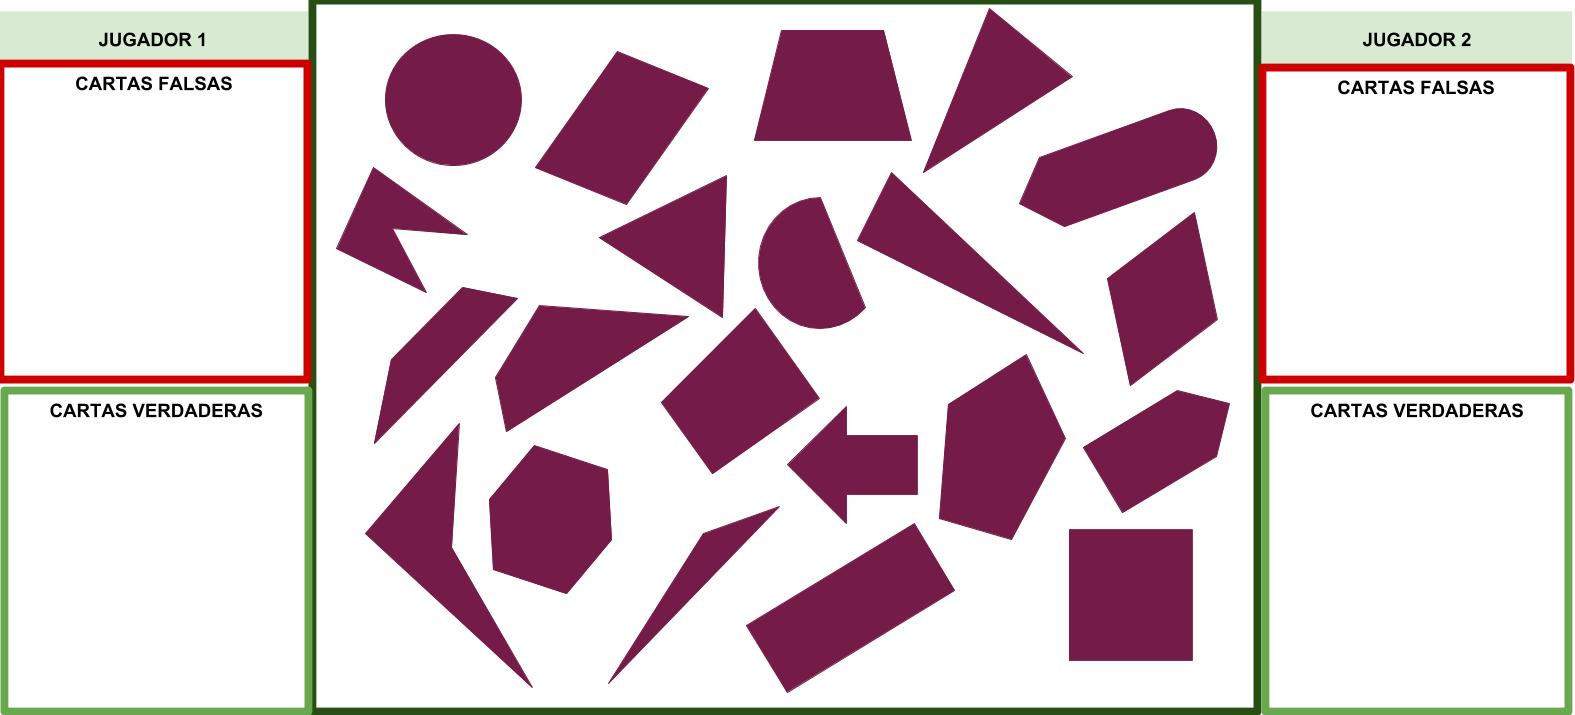 Tablero del juego en el cual aparecen las figuras y los lugares donde colocar las cartas del mazo según corresponda.